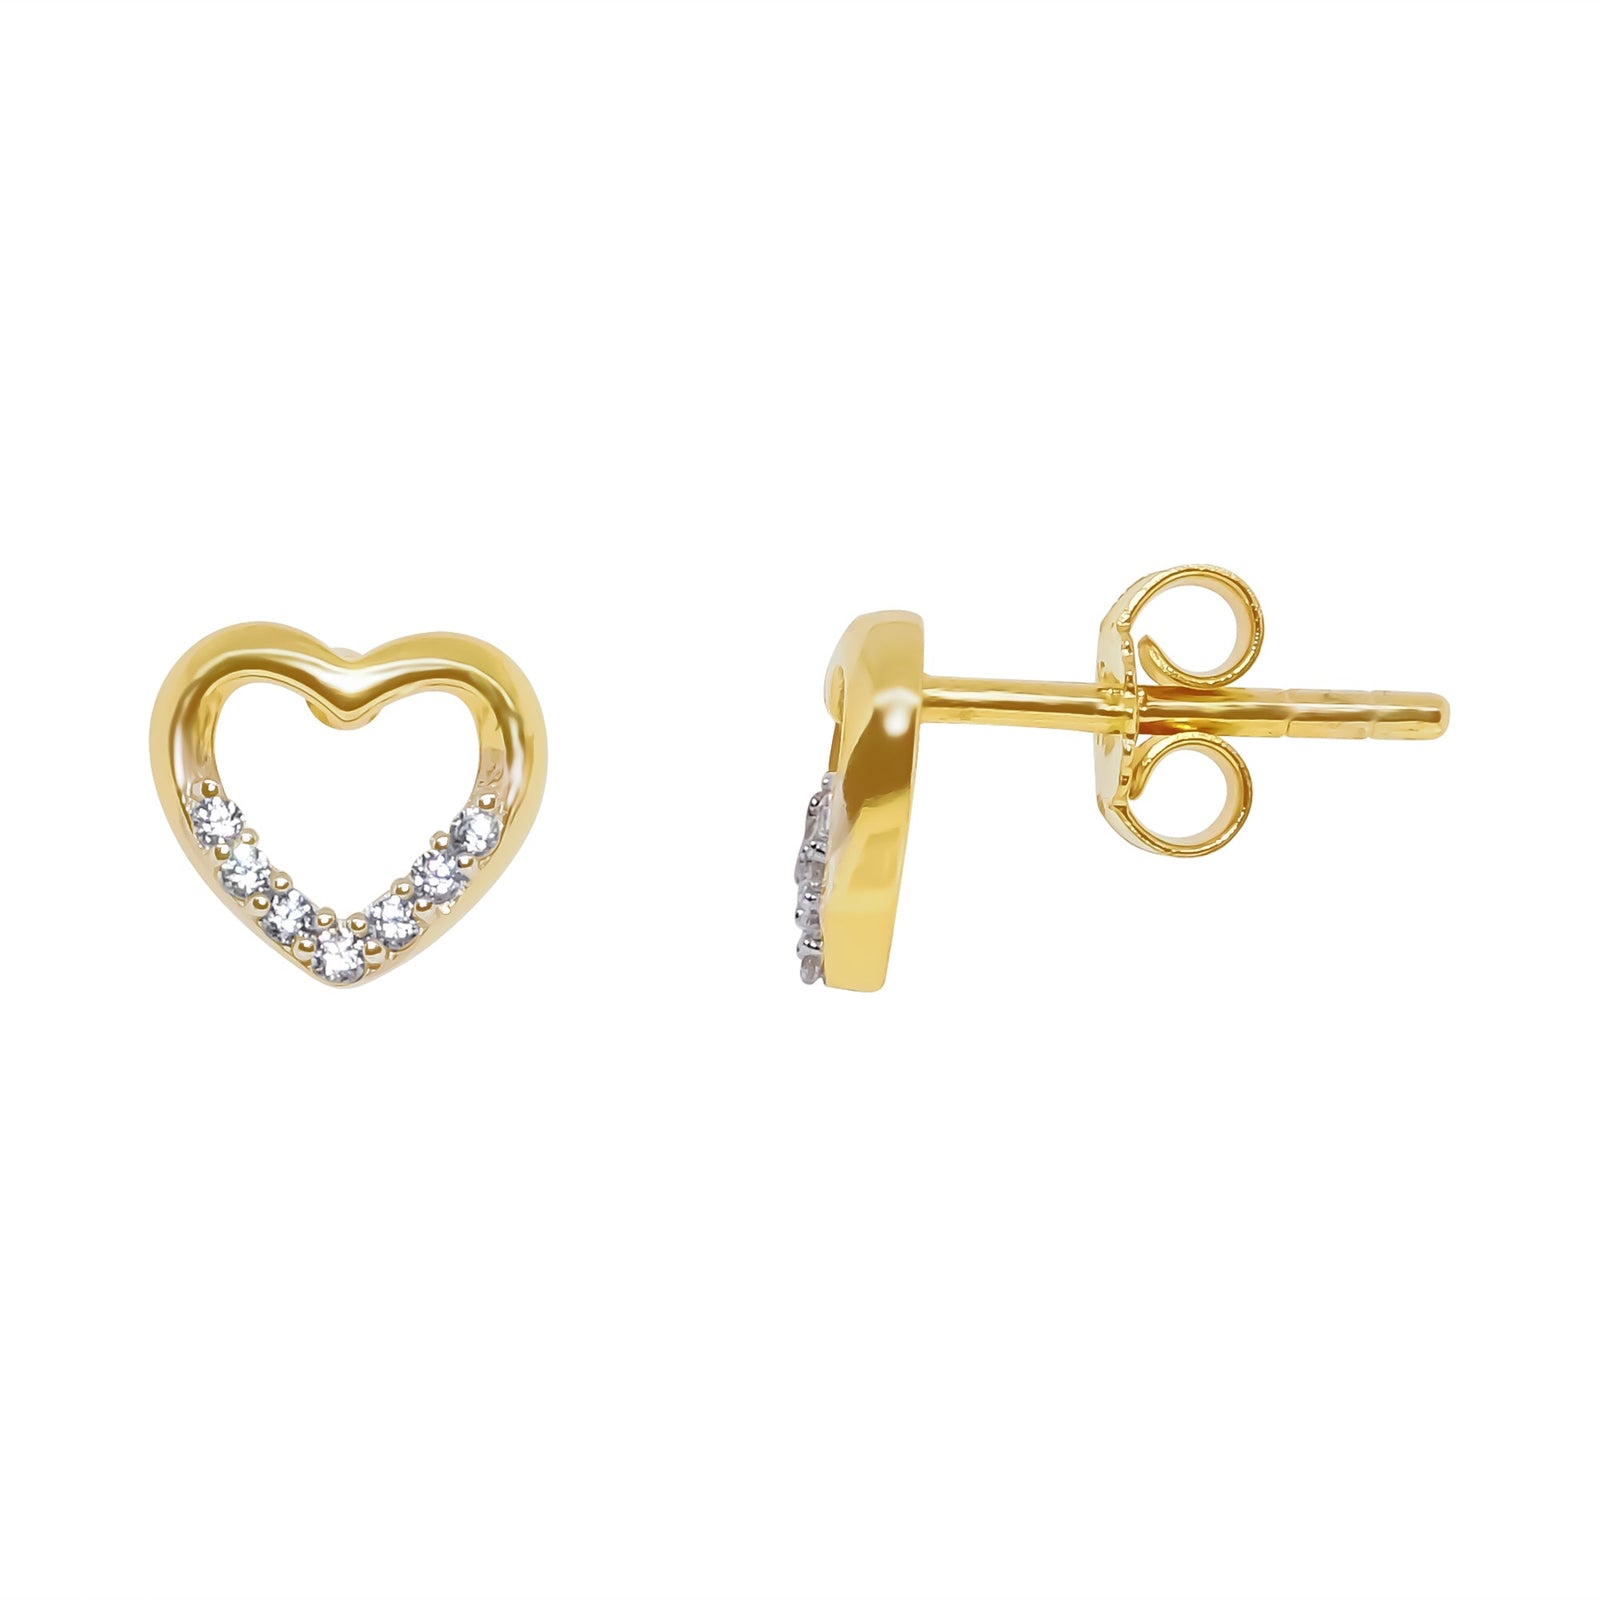 9ct gold cz heart stud earrings